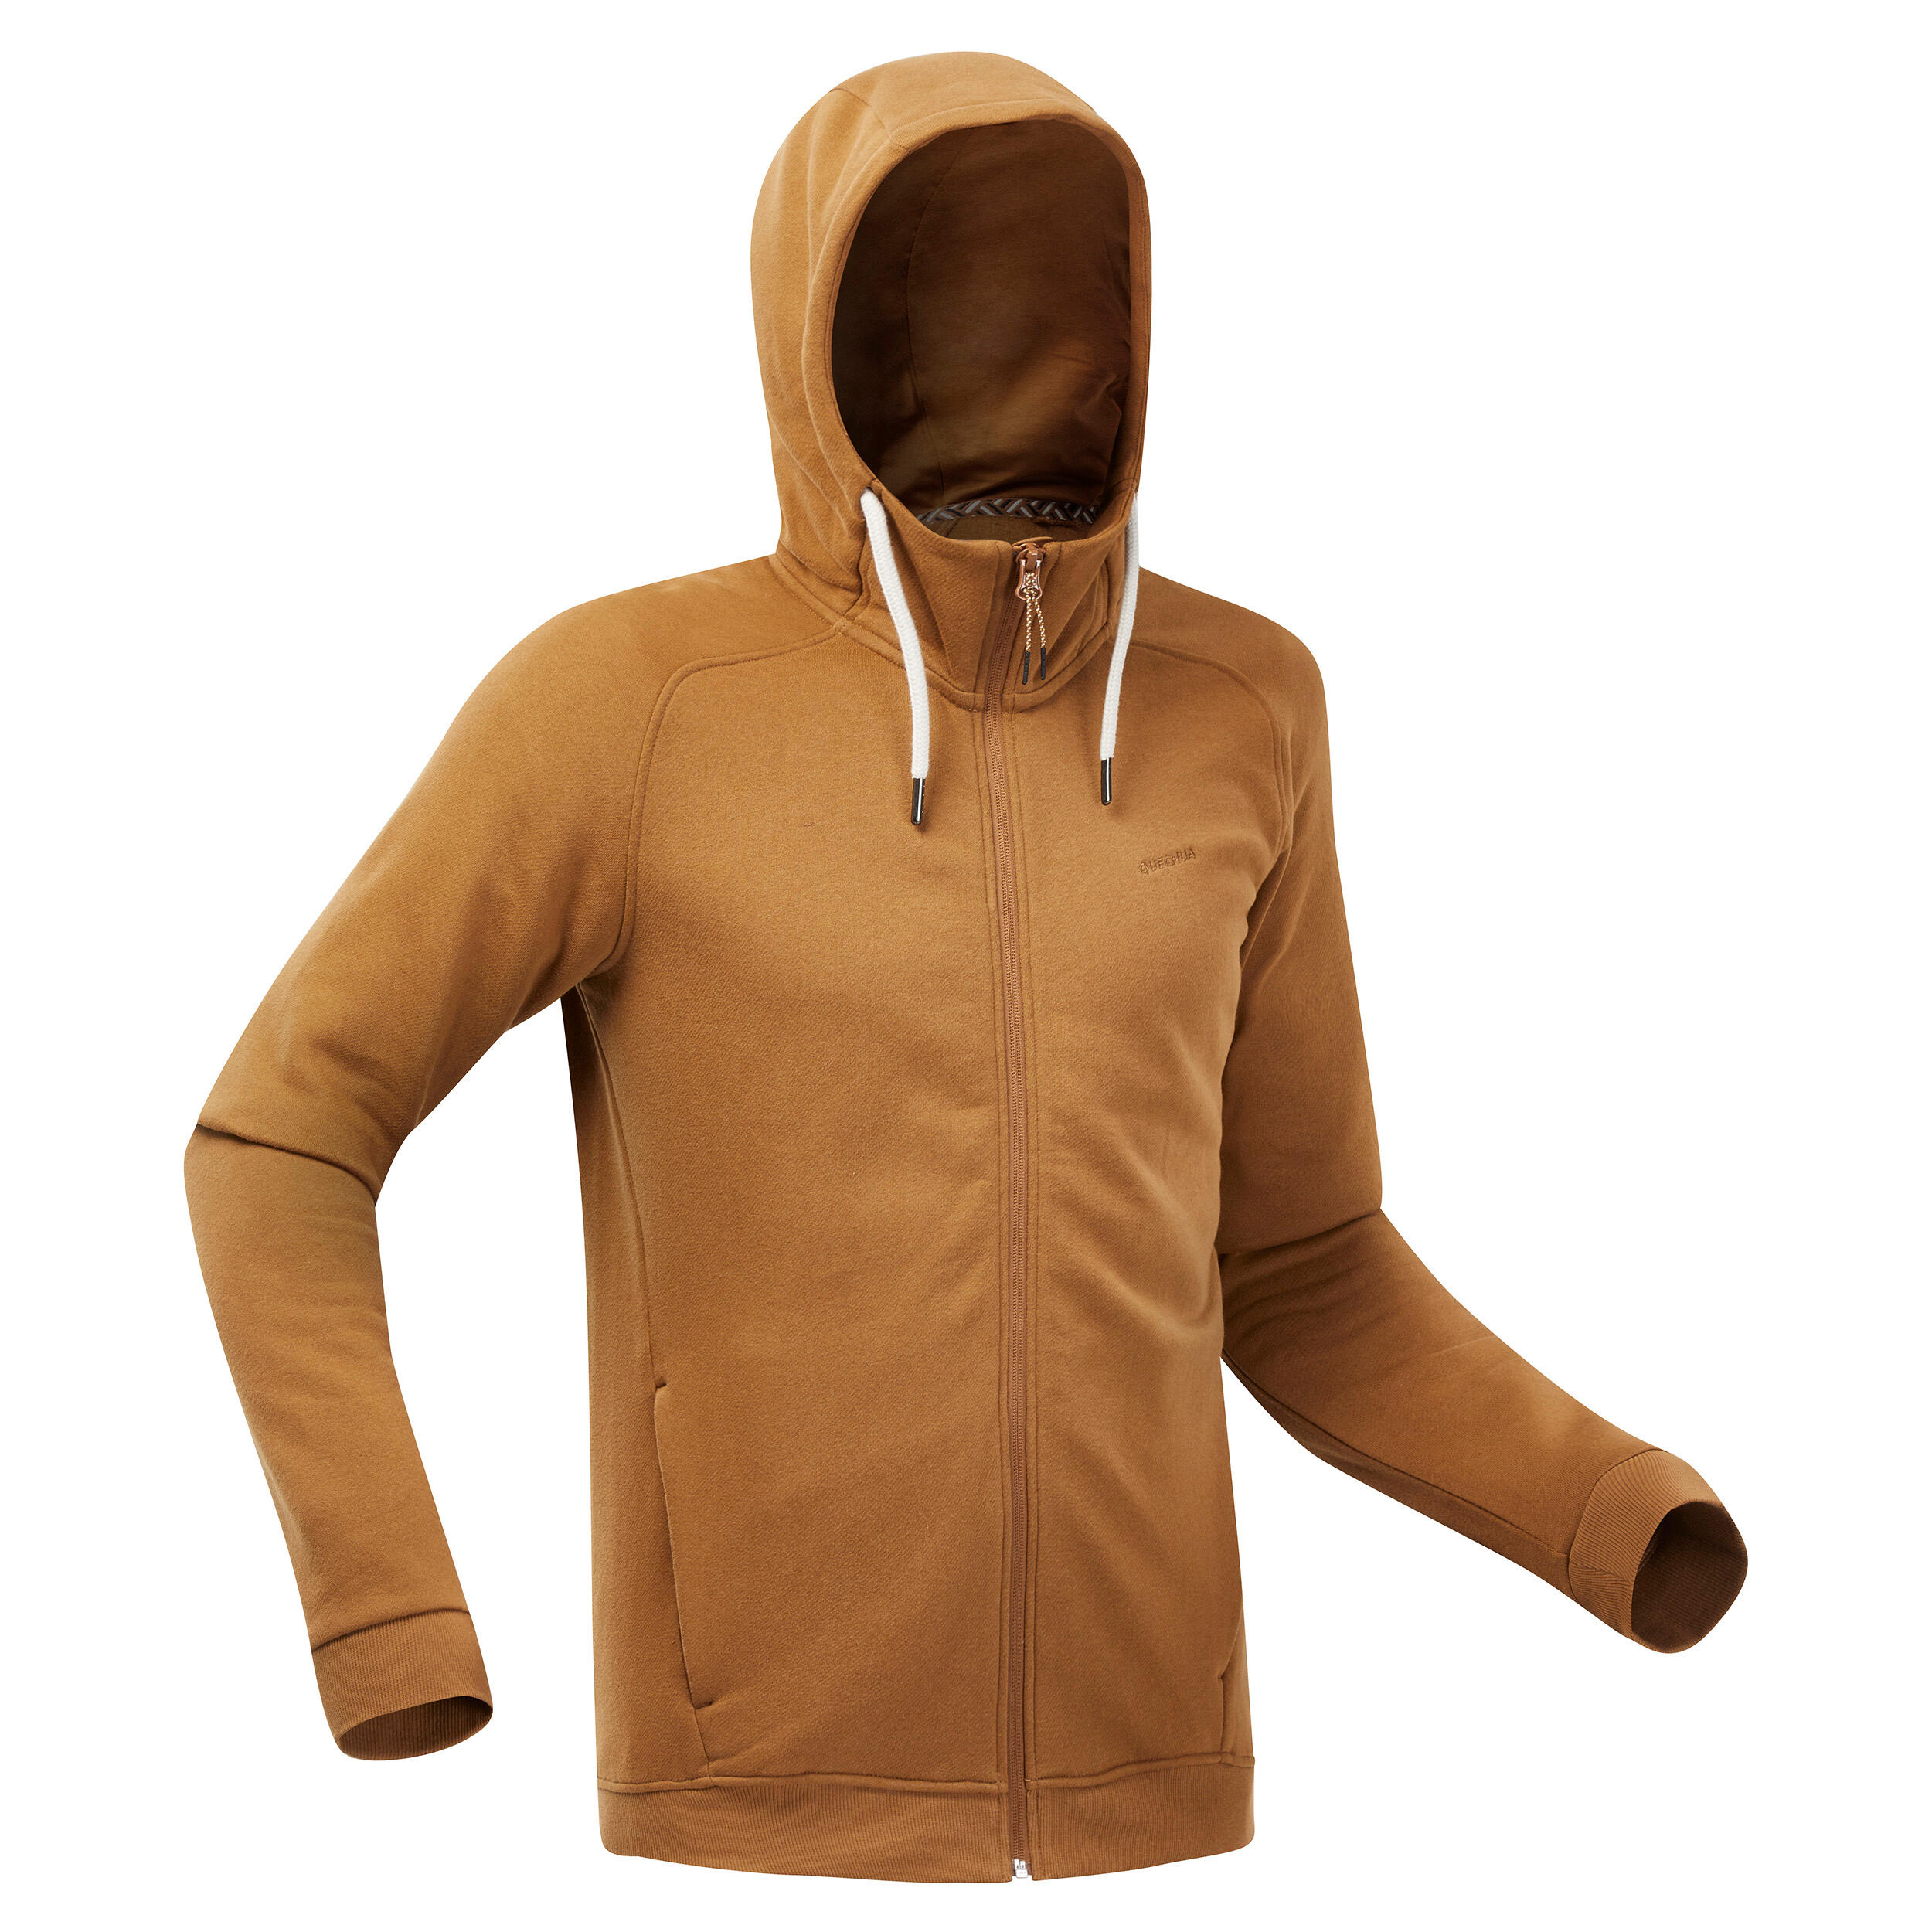 QUECHUA Men’s Hiking Zipped Hooded Sweatshirt - NH150